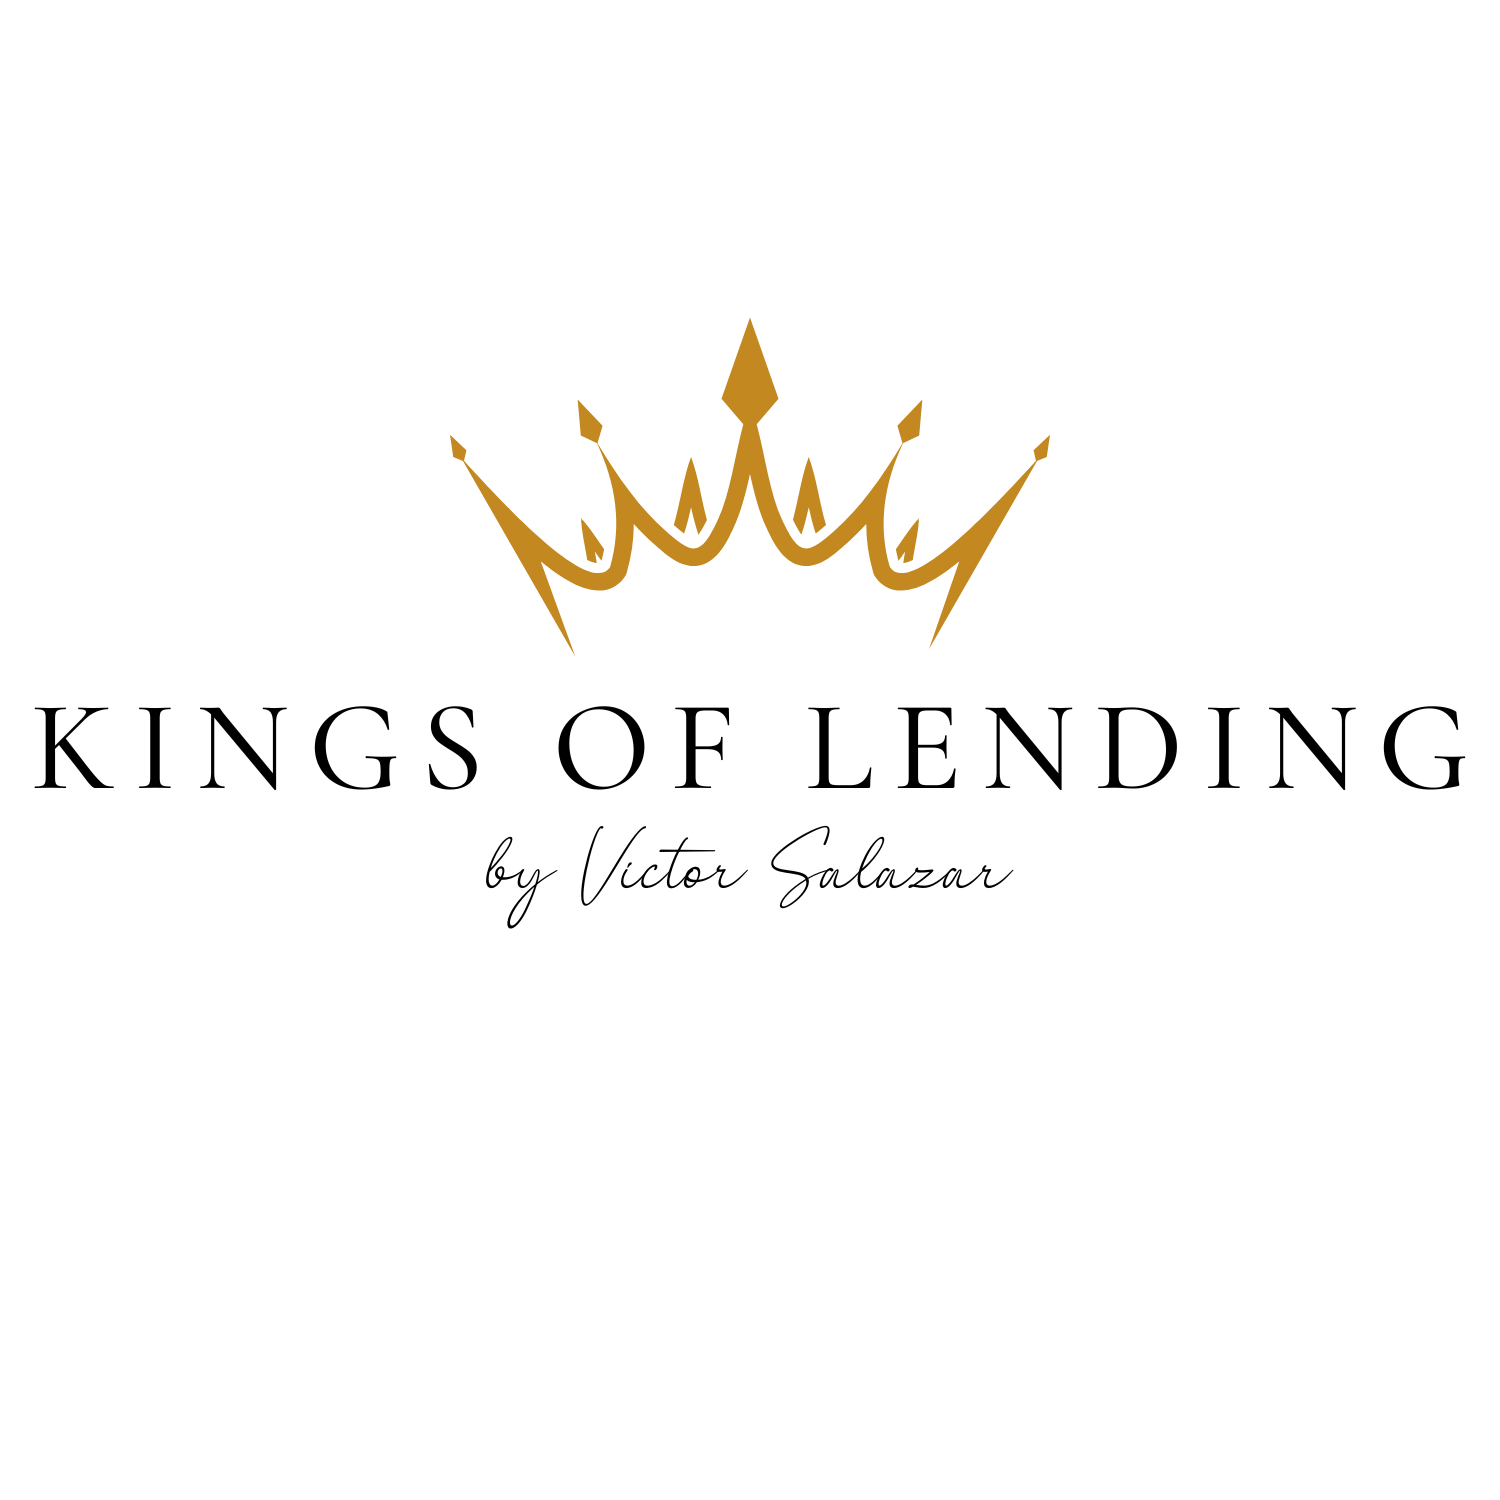 Kings of Lending